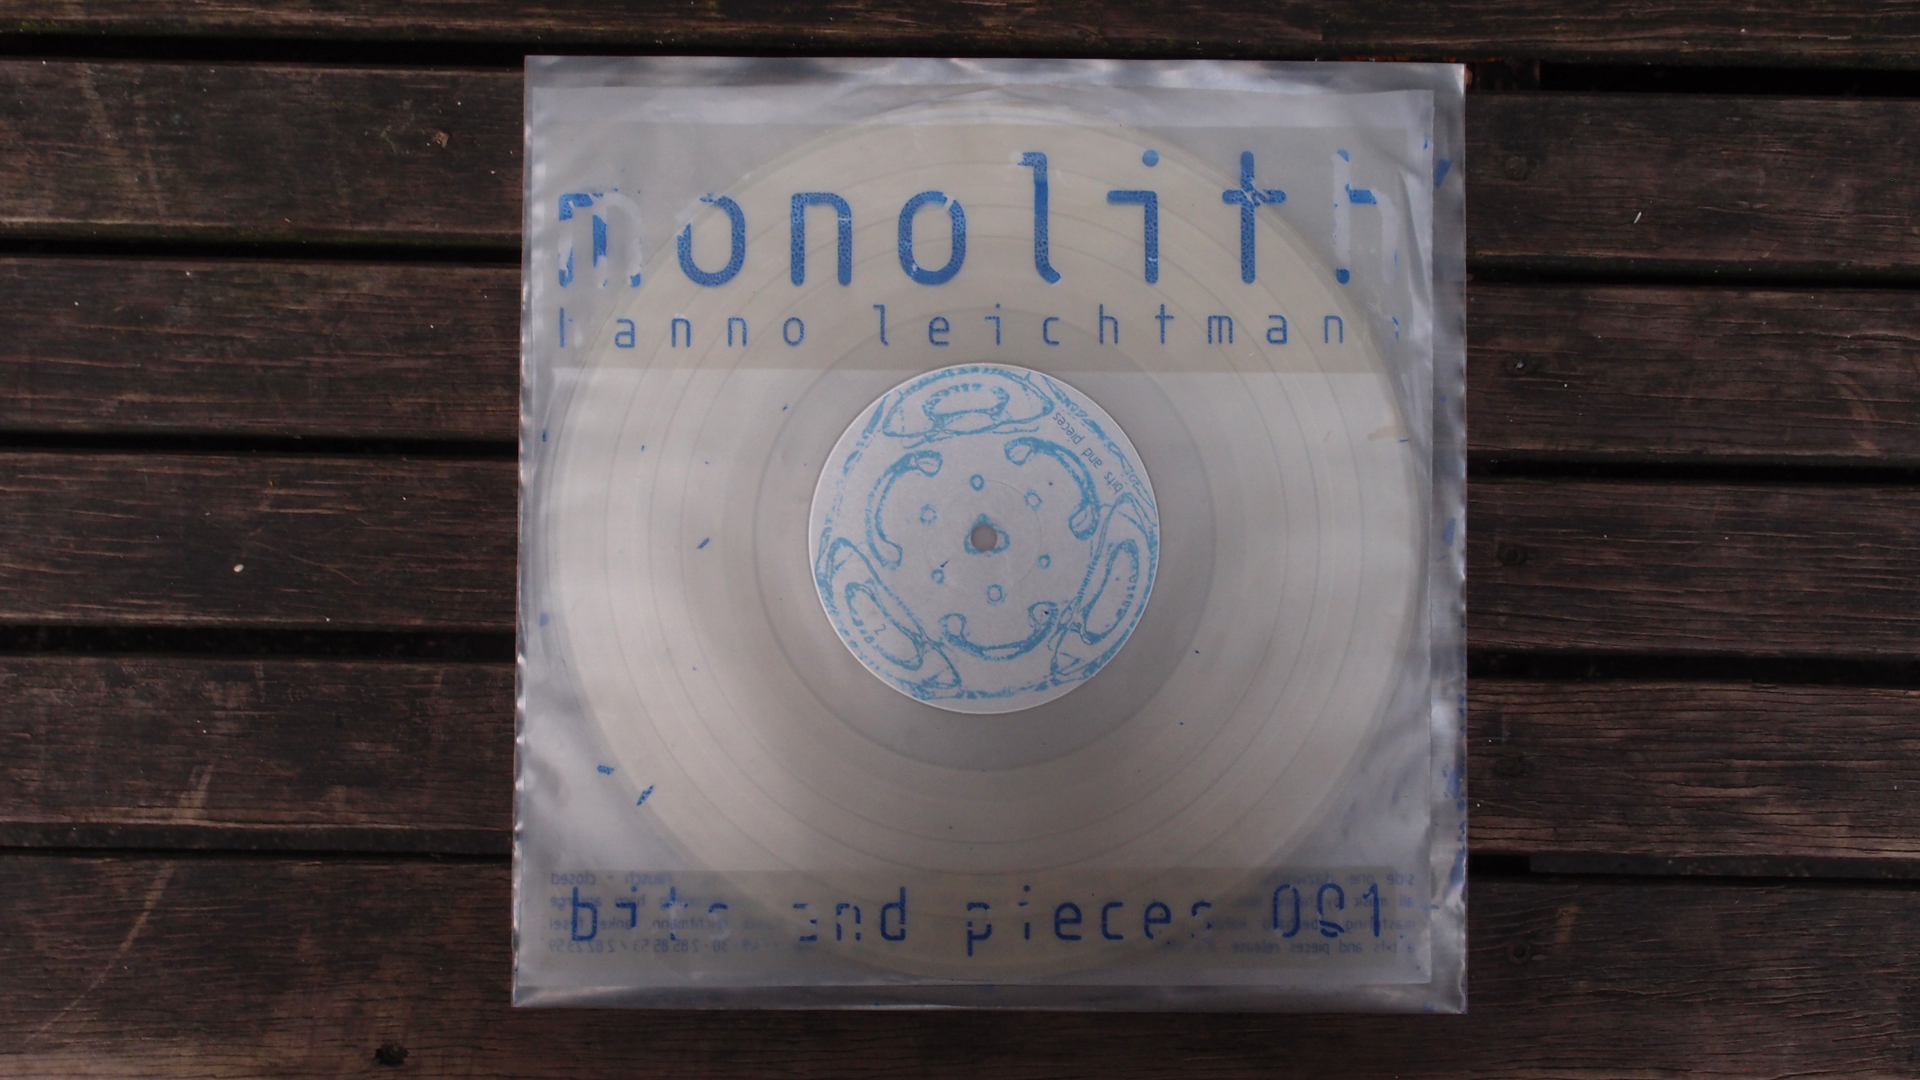 Hanno Leichtmann - 1996 Monolith (bits and pieces 001) (V24Bit)